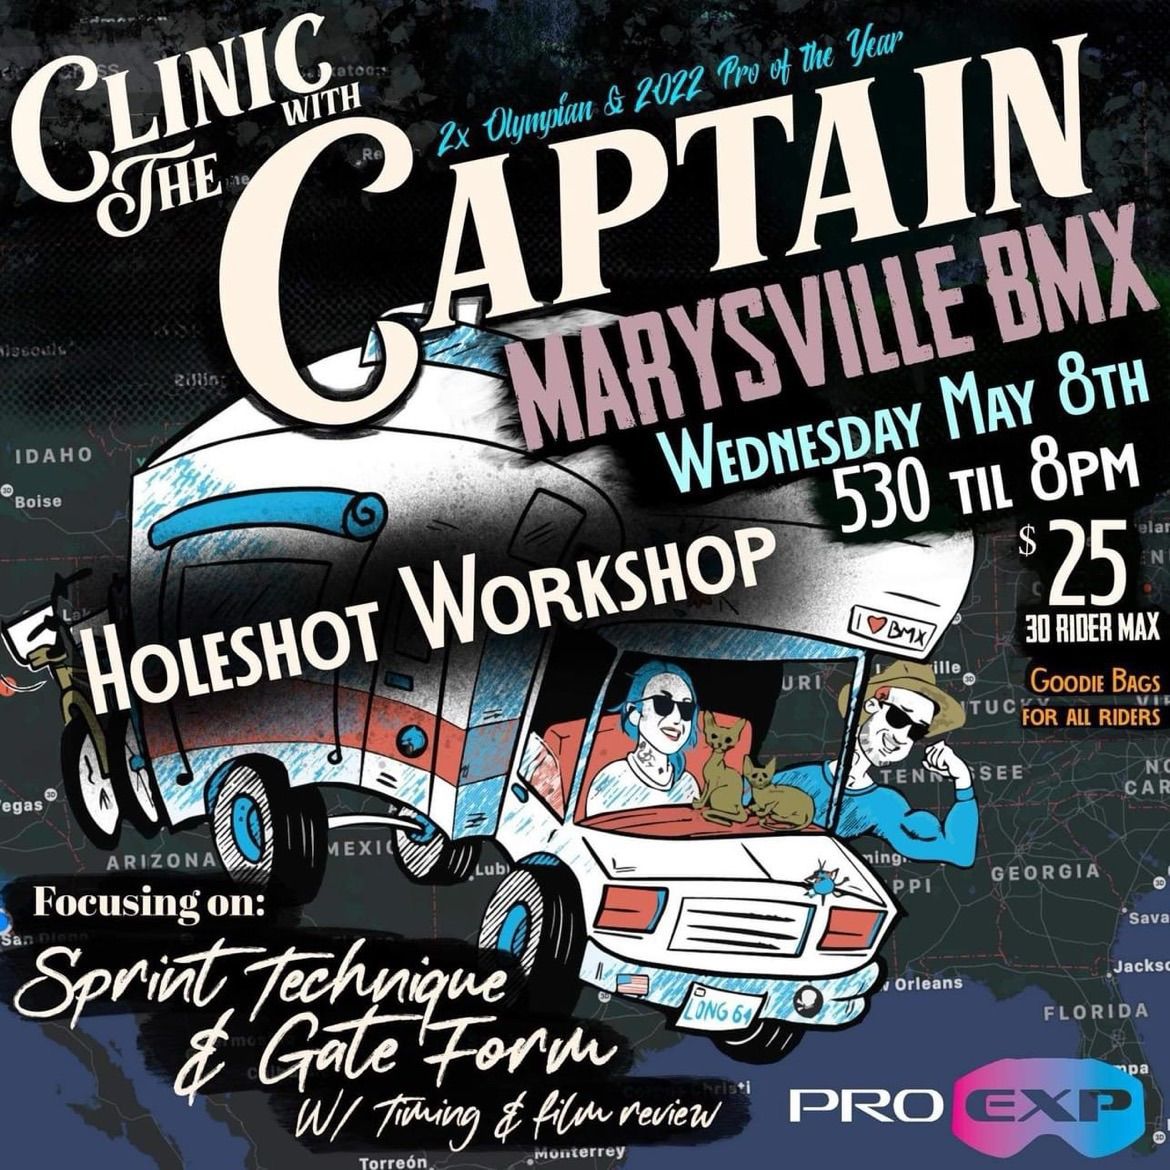 Marysville BMX - Nic Long Holeshot Workshop